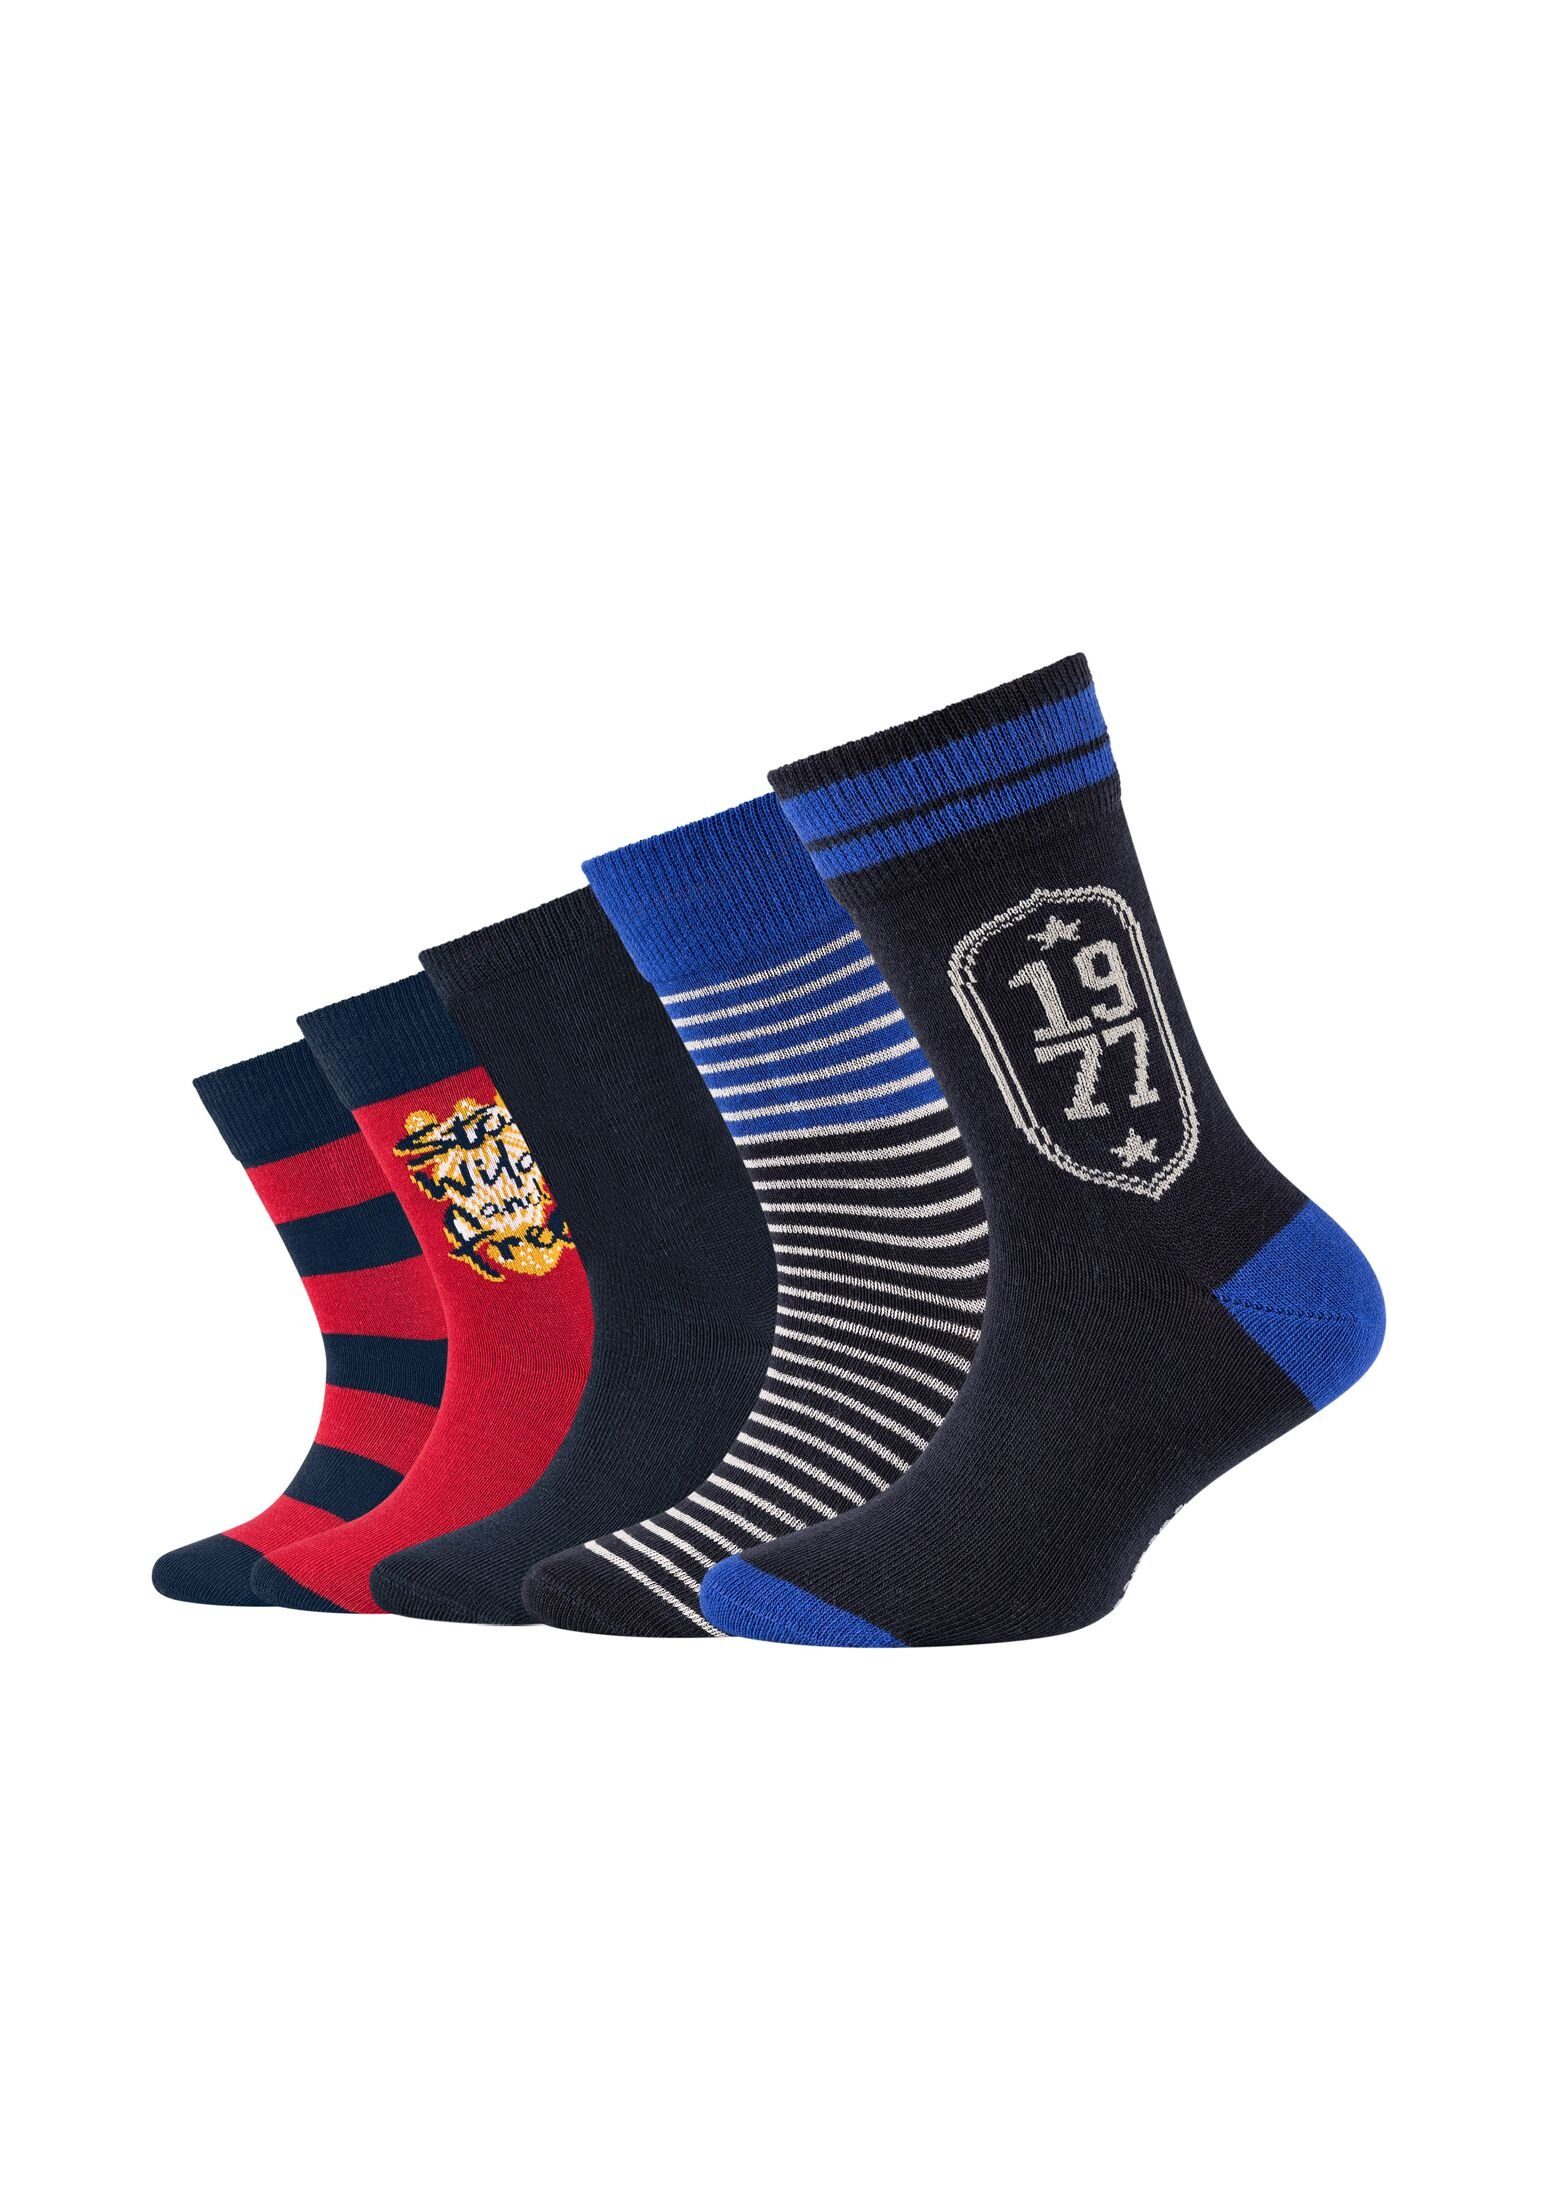 Camano Socken Socken navy Pack 5er